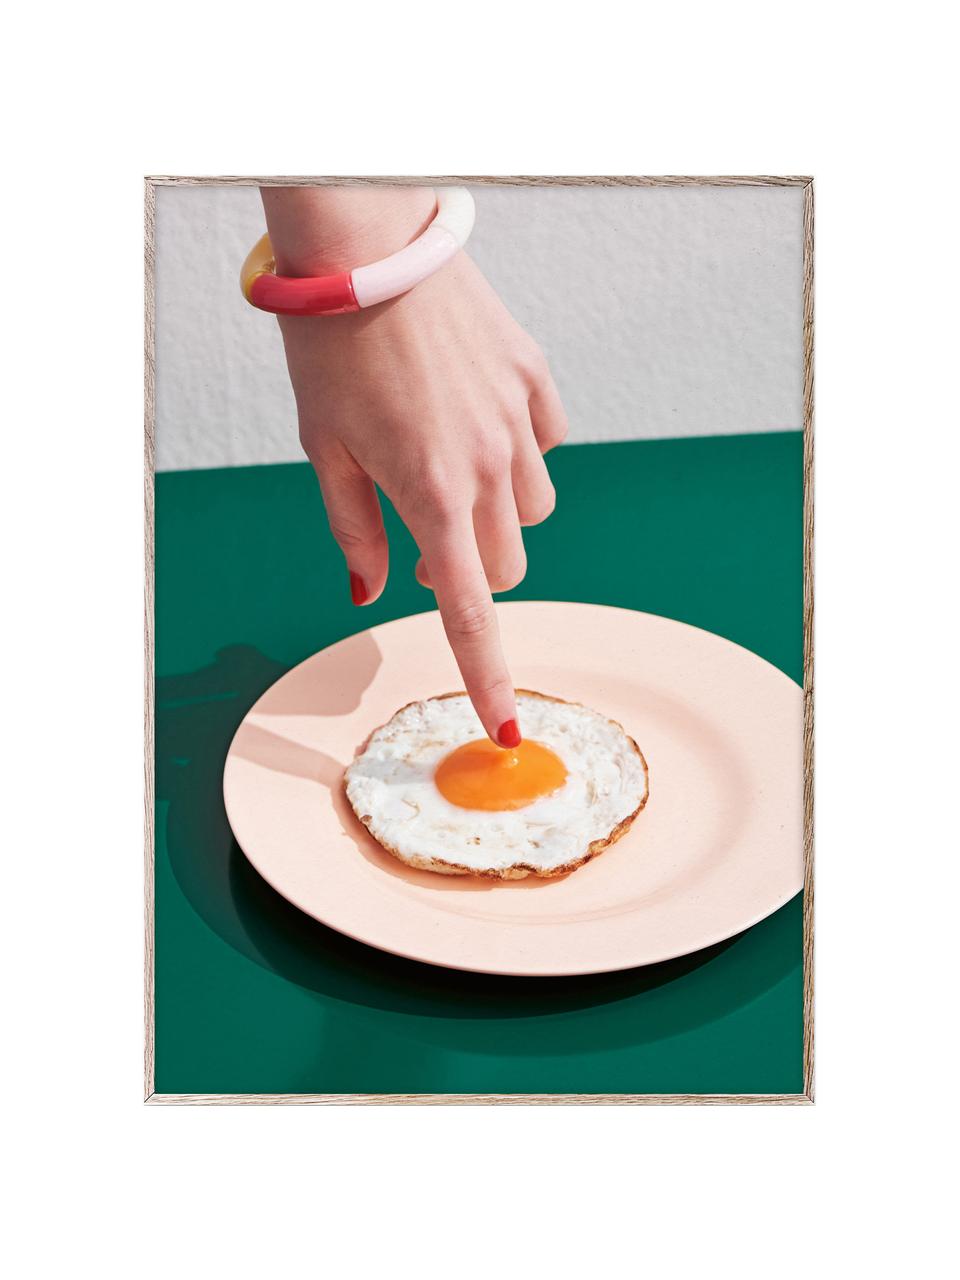 Poster Fried Egg, 210 g mattes Hahnemühle-Papier, Digitaldruck mit 10 UV-beständigen Farben, Dunkelgrün, Peach, Bunt, B 30 x H 40 cm